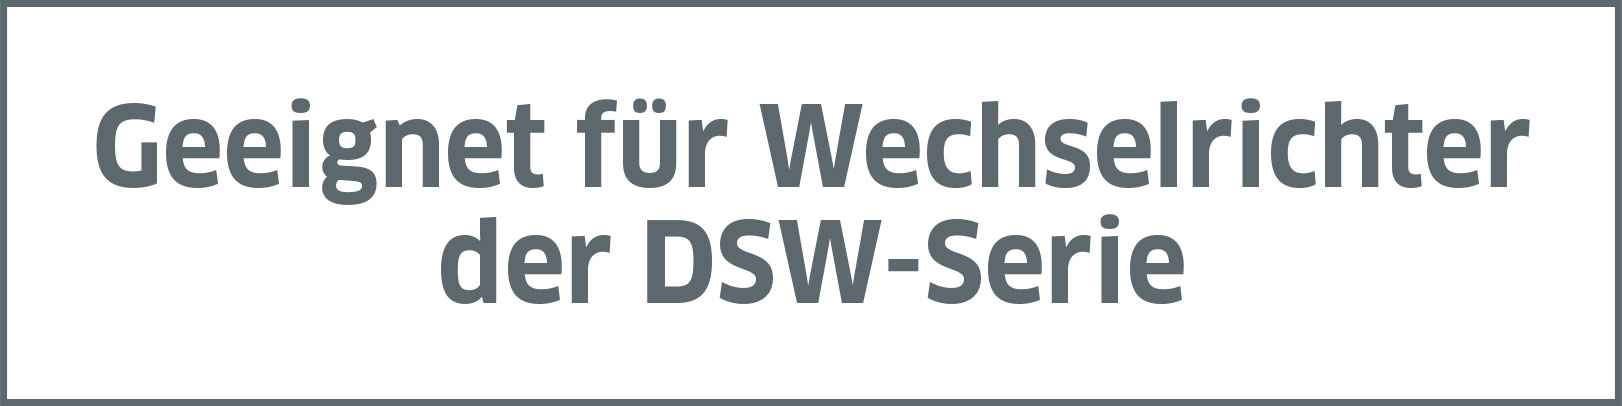 Geeignet für Wechselrichter der DSW-Serie